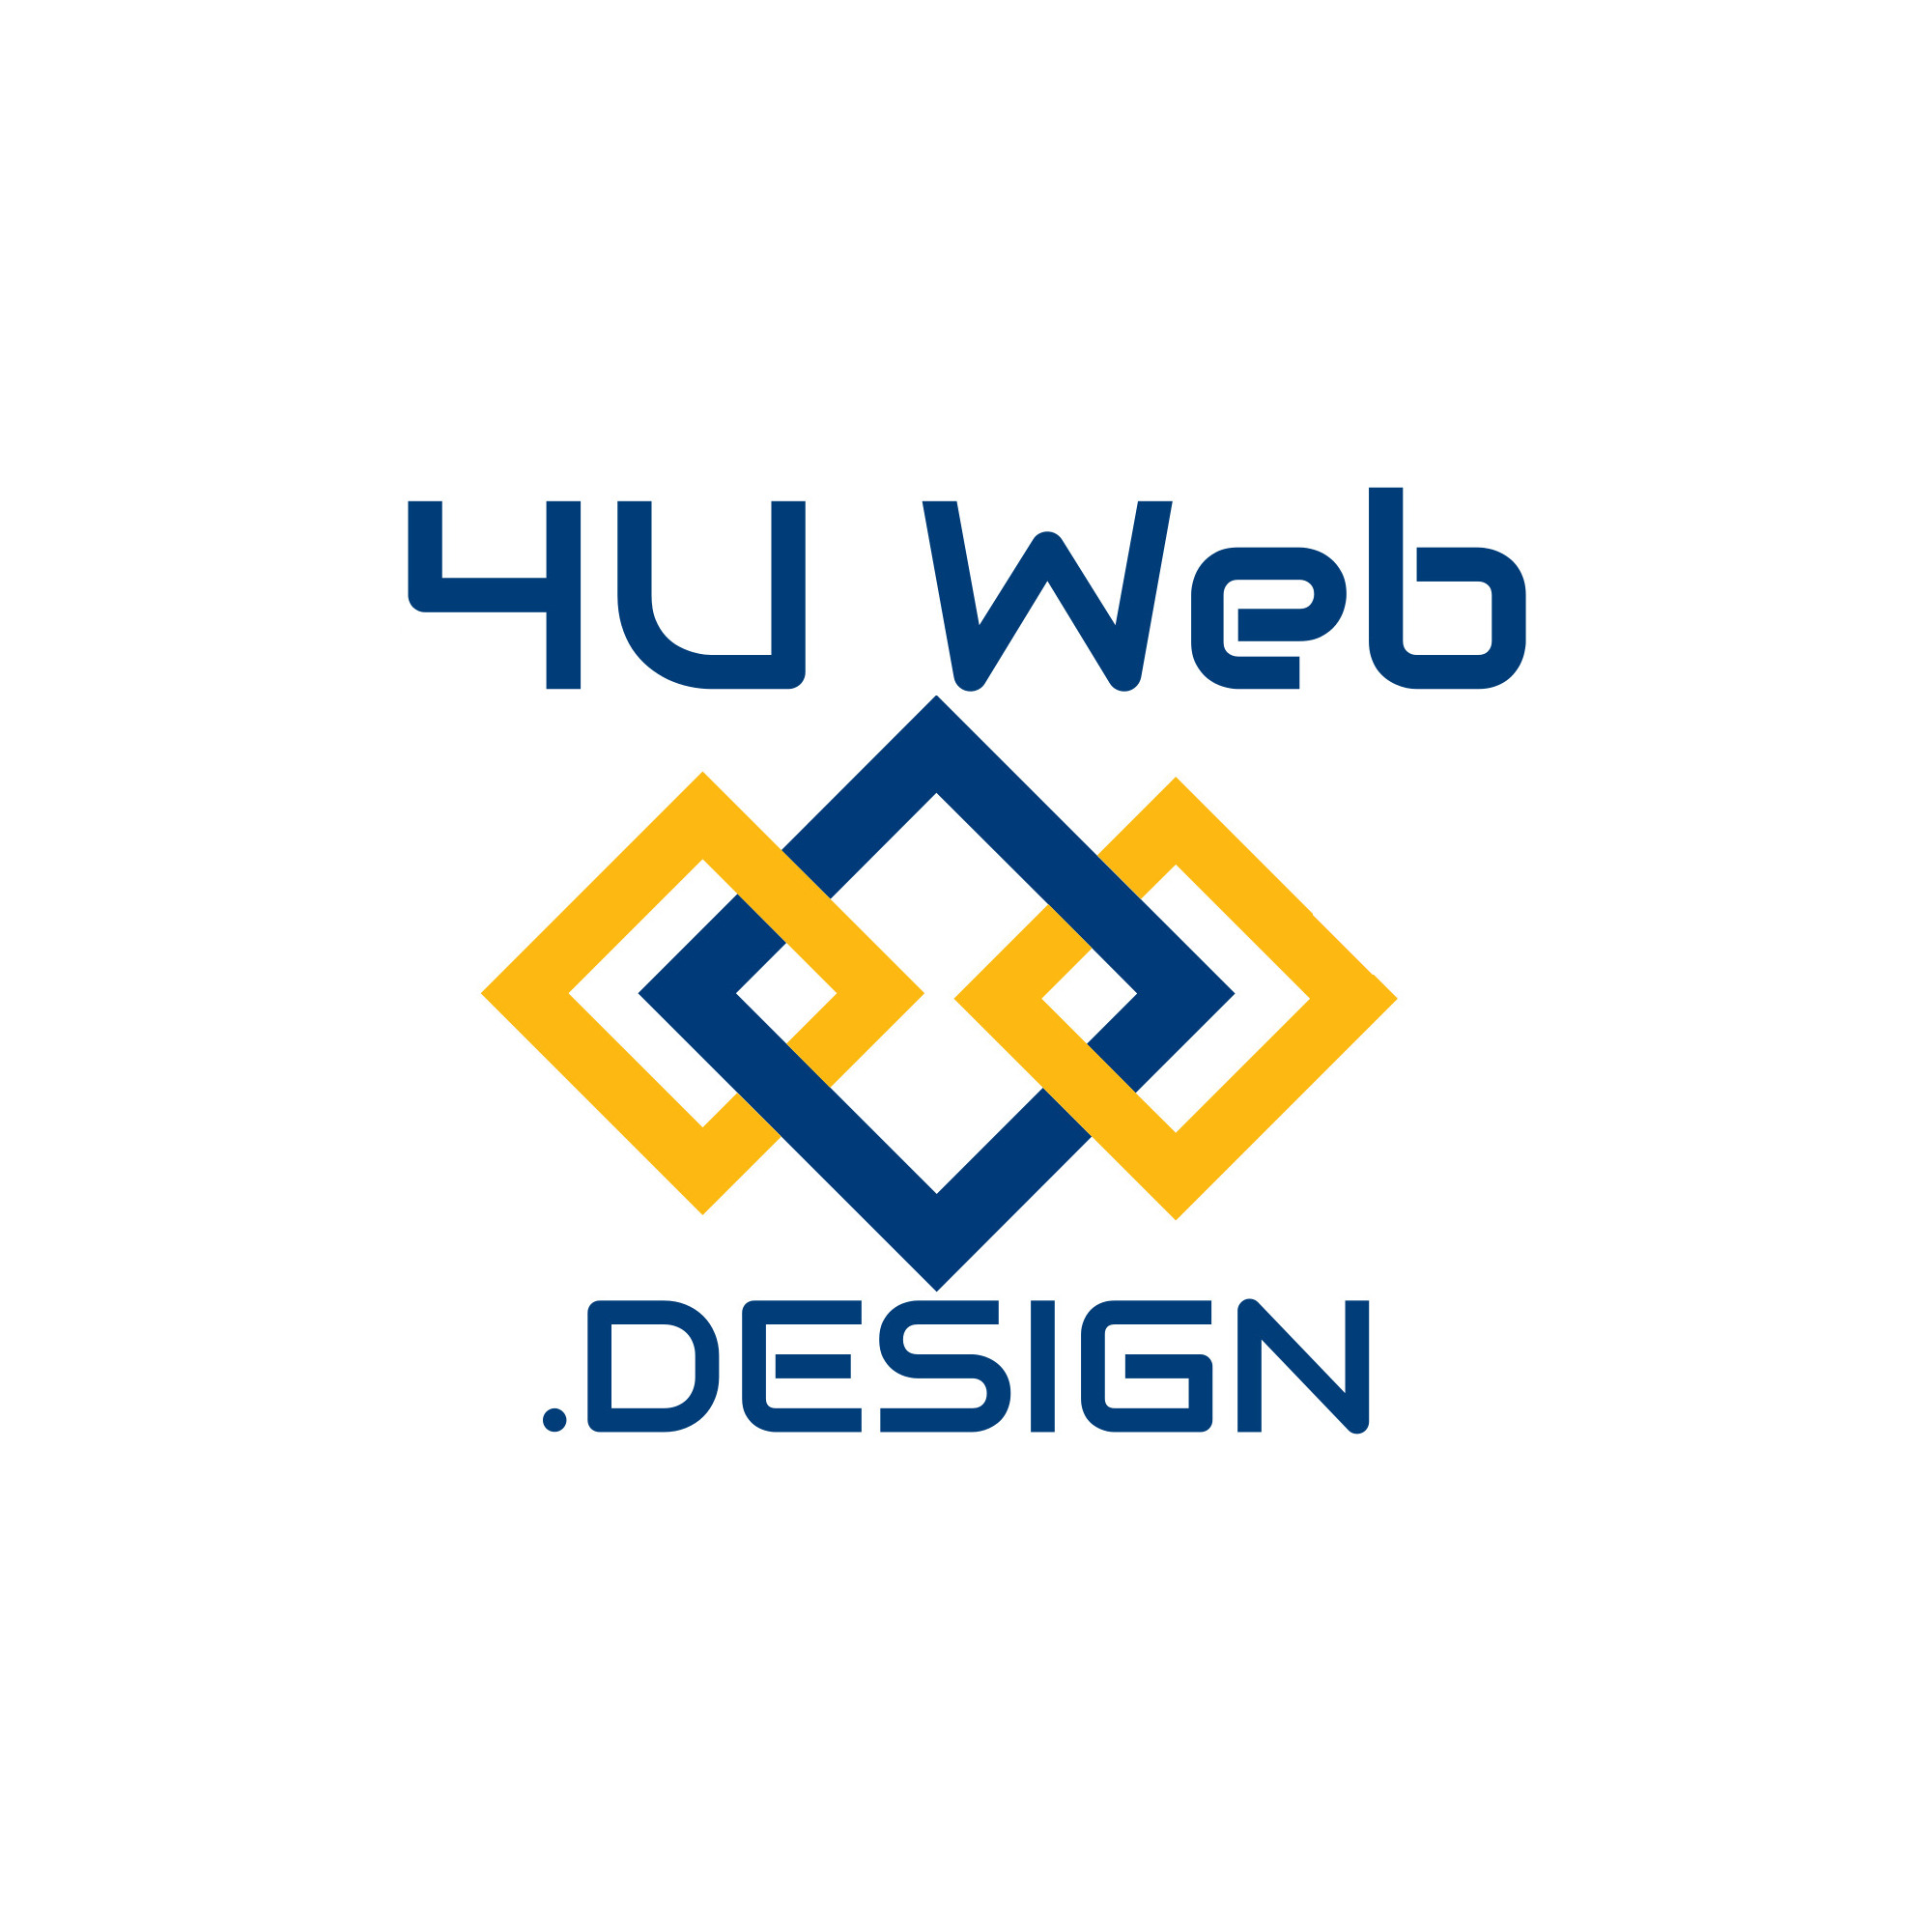 4uweb.design-logo